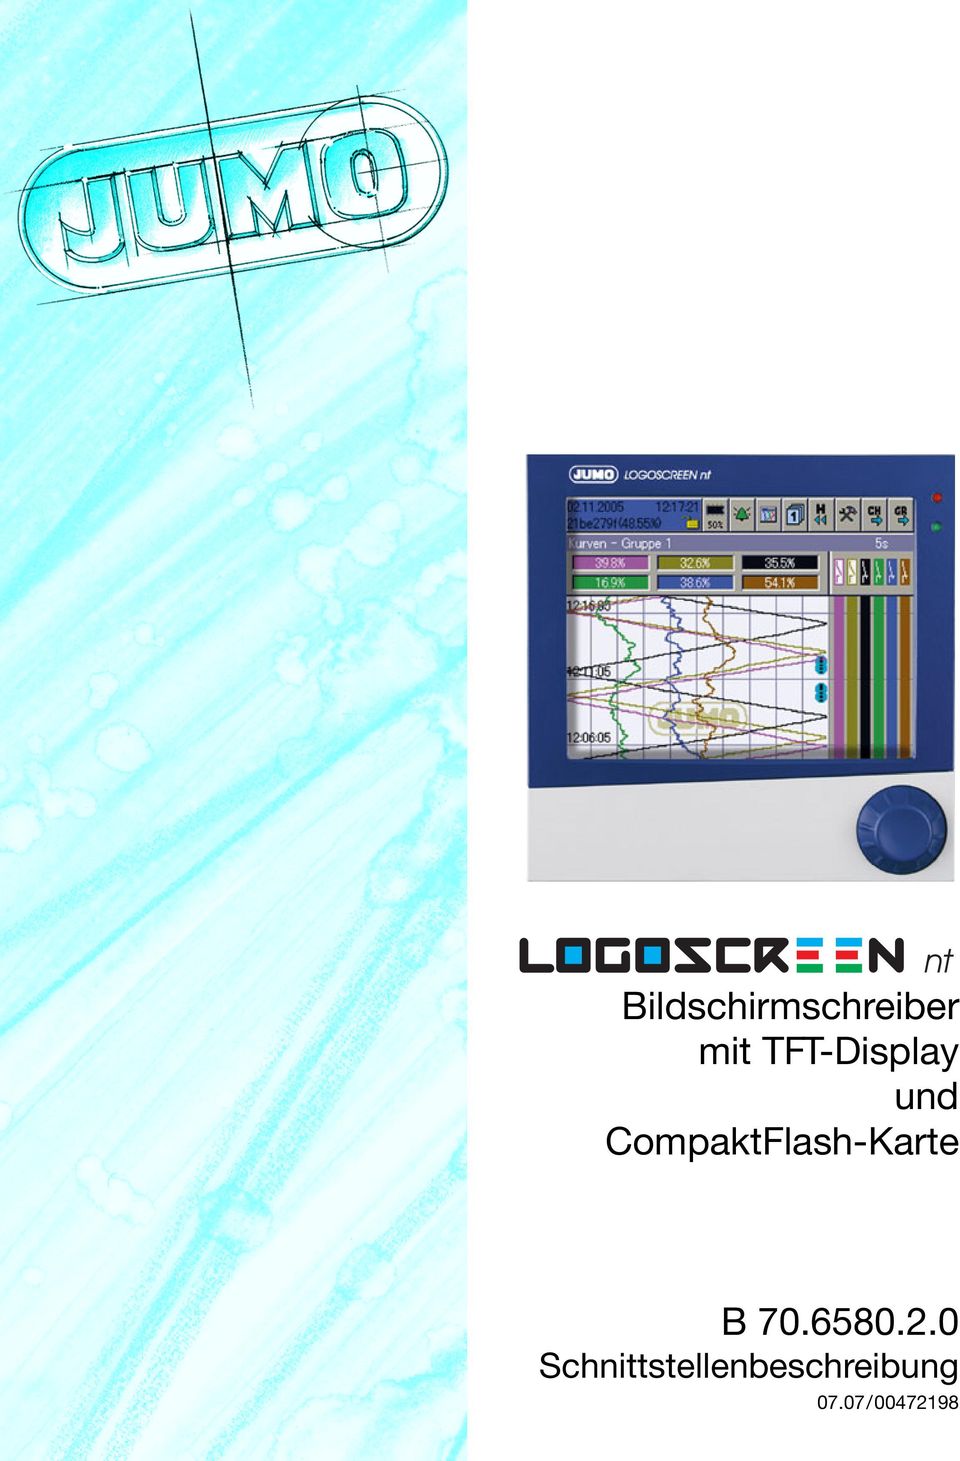 CompaktFlash-Karte B 70.6580.